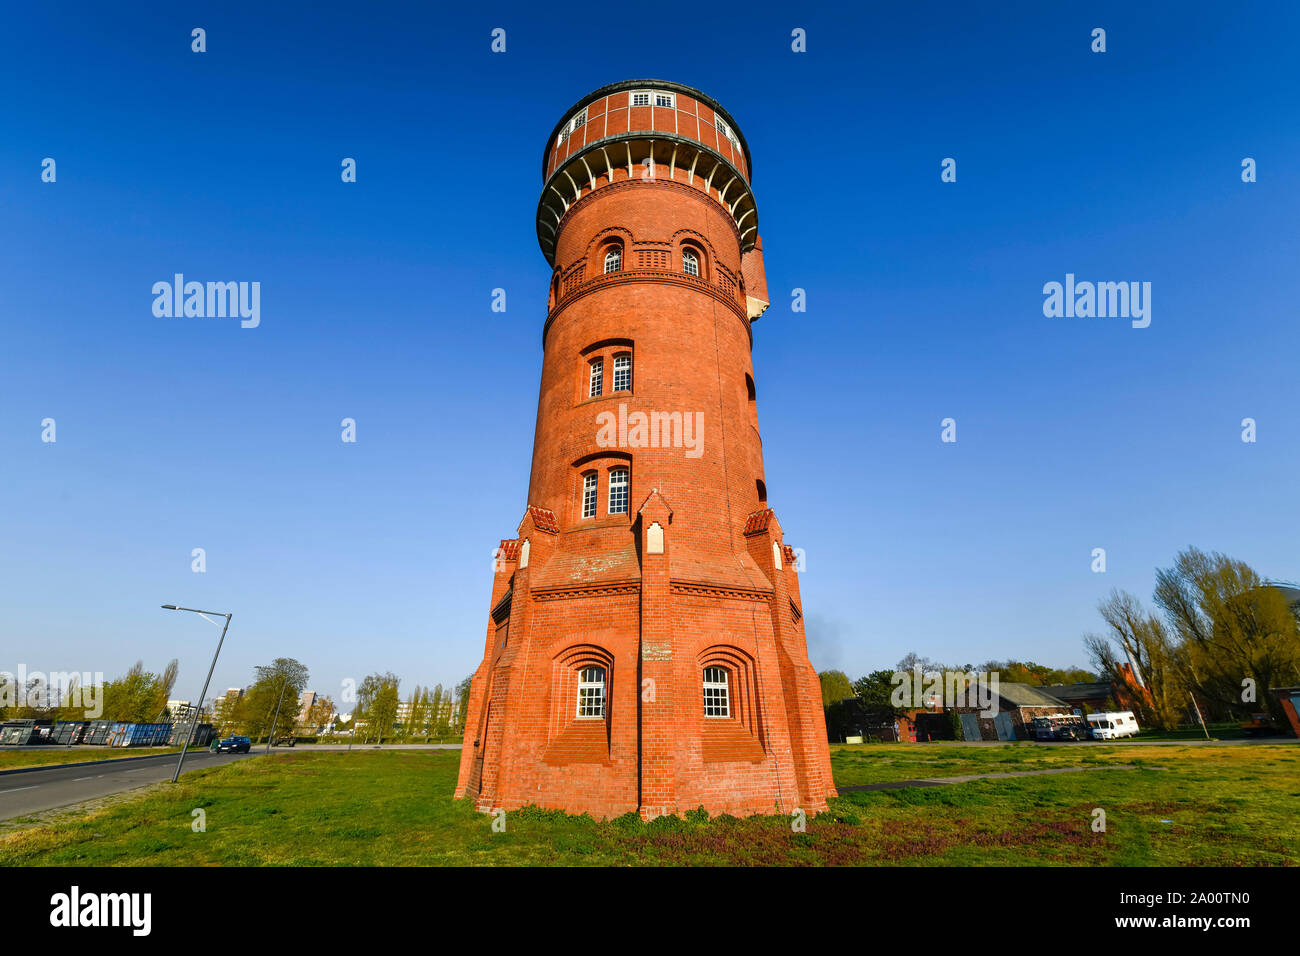 Alter Wasserturm, Marienpark, Lankwitzer Strasse, Mariendorf, Tempelhof-Schoeneberg, Berlin, Deutschland Stock Photo